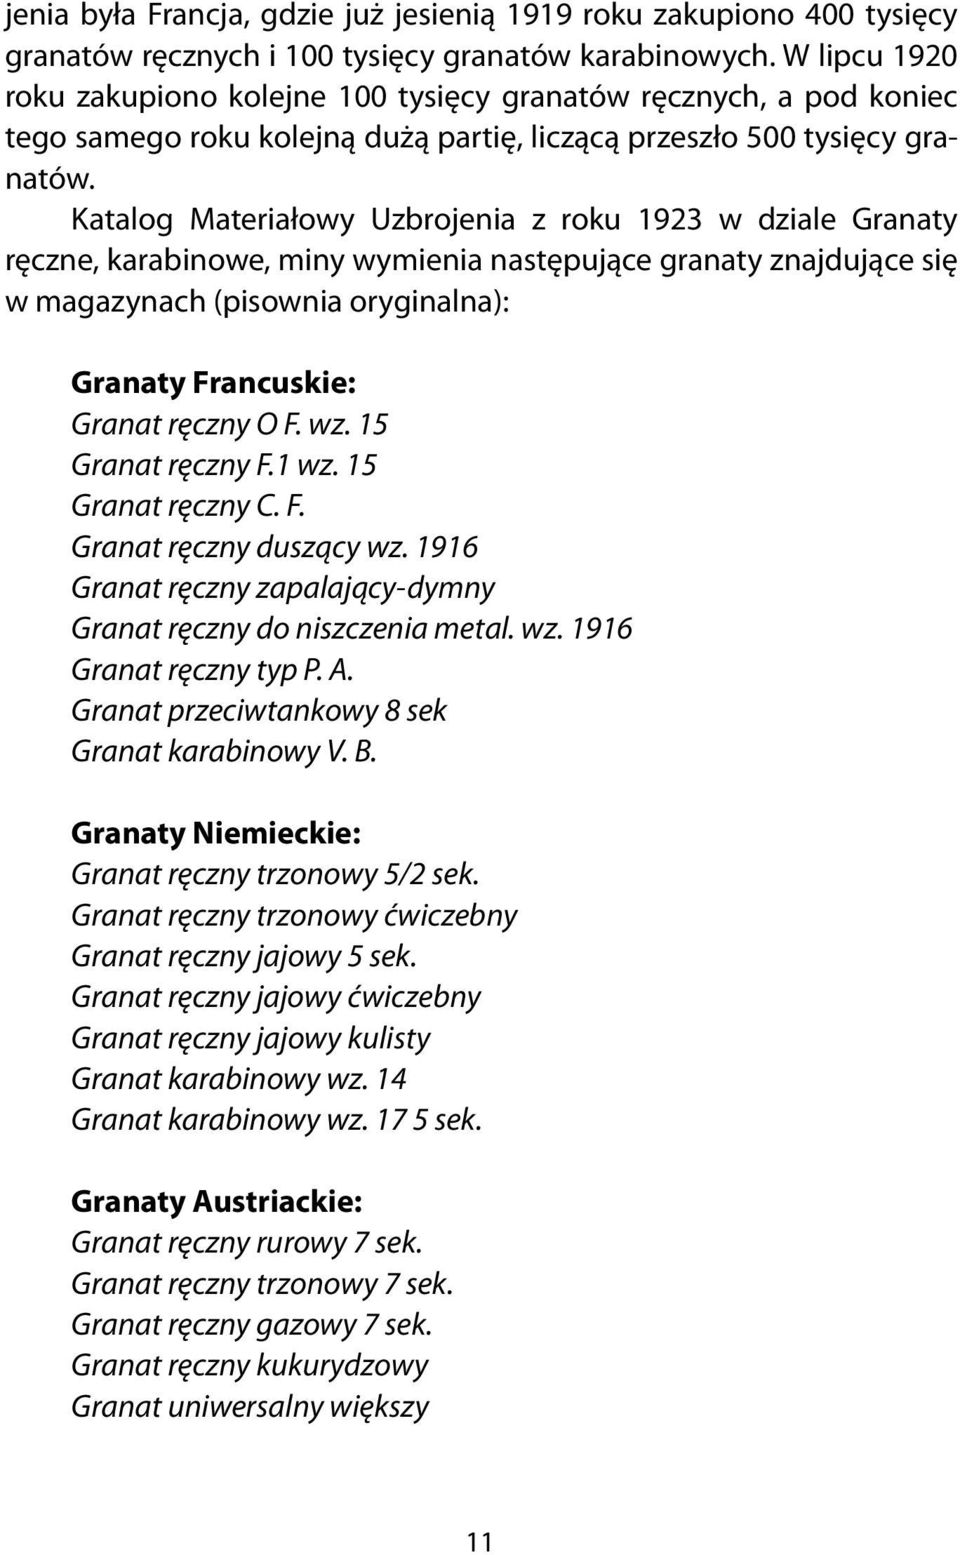 Katalog Materiałowy Uzbrojenia z roku 1923 w dziale Granaty ręczne, karabinowe, miny wymienia następujące granaty znajdujące się w magazynach (pisownia oryginalna): Granaty Francuskie: Granat ręczny